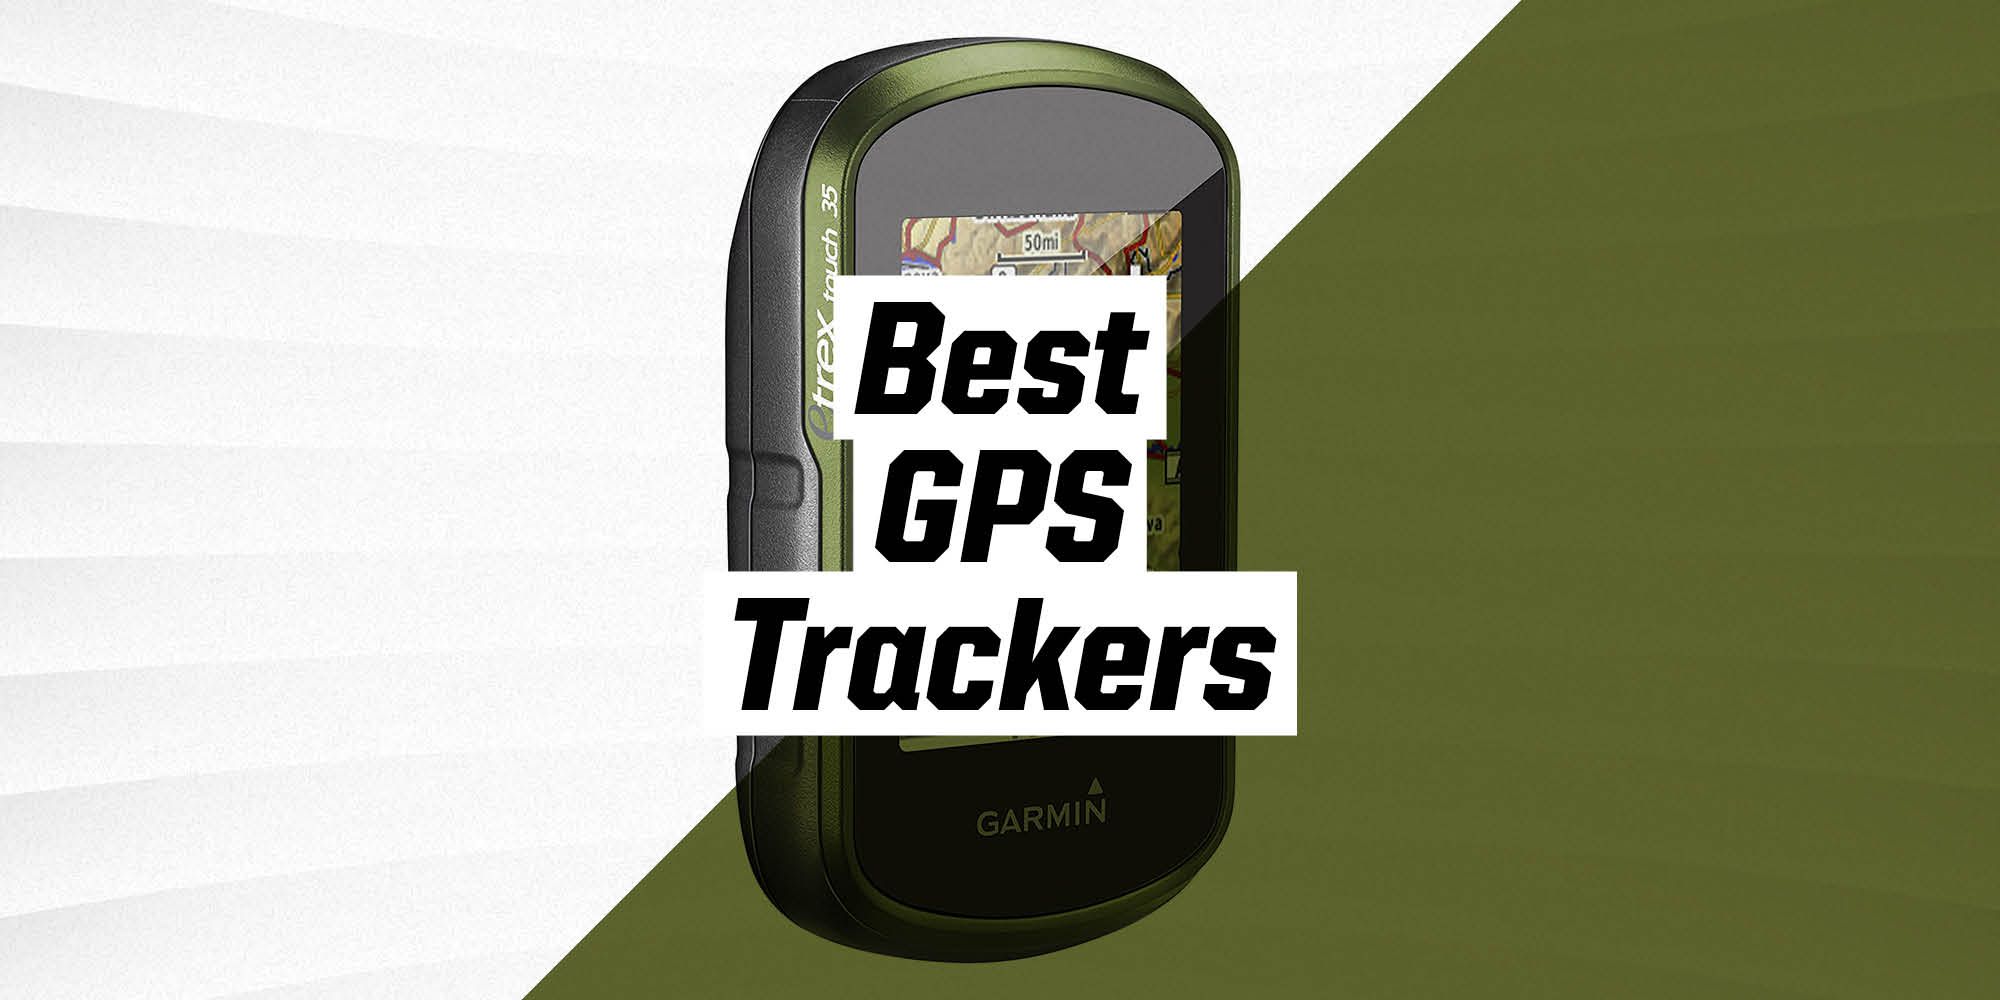 Garmin eTrex Touch 35 - trekking GPS - GPS navigation systems - GPS -  Outdoor